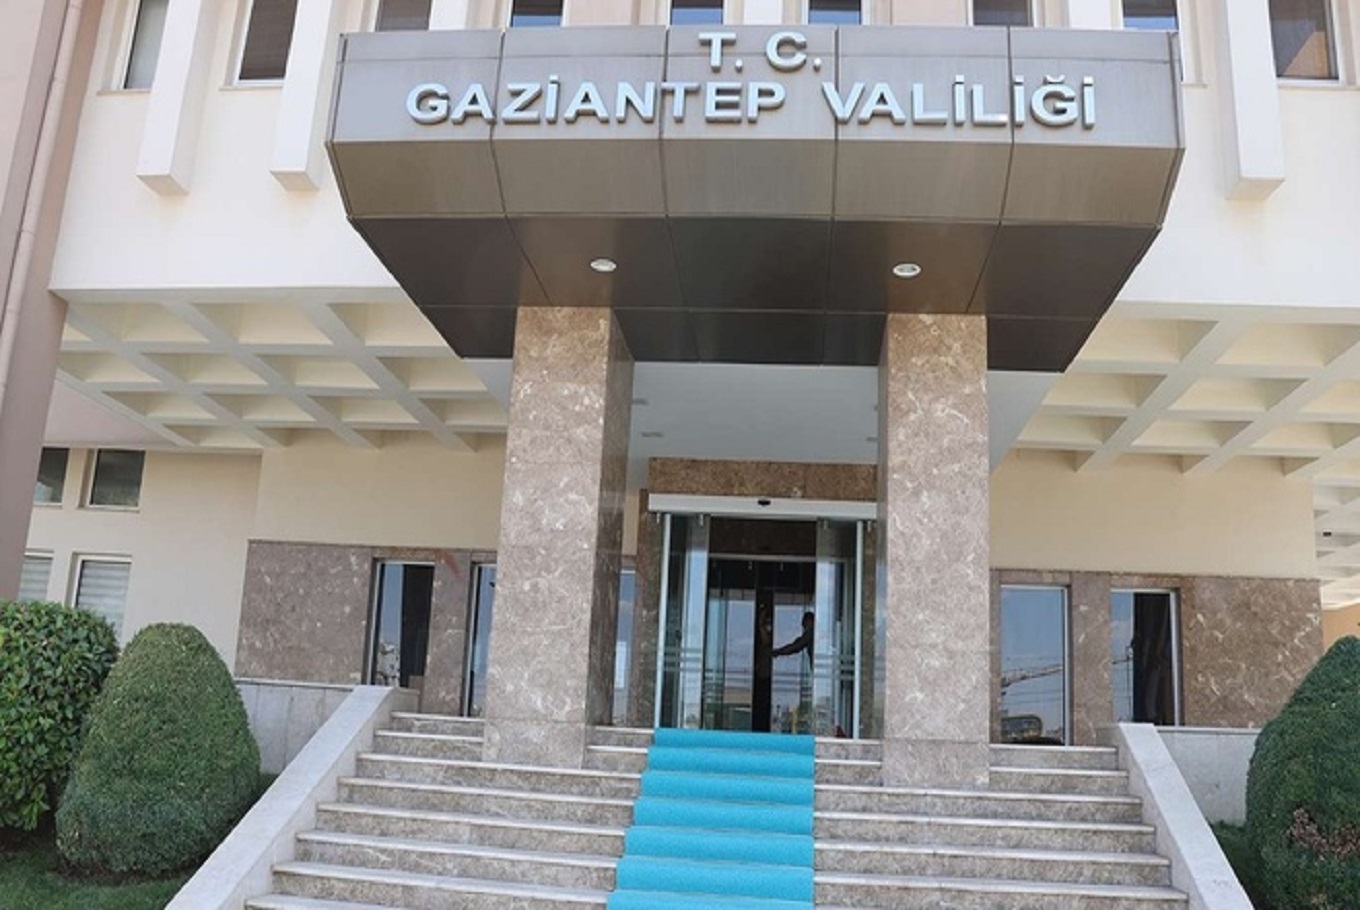 Gaziantep'te sınırı geçmeye çalışan 7 kişi yakalandı